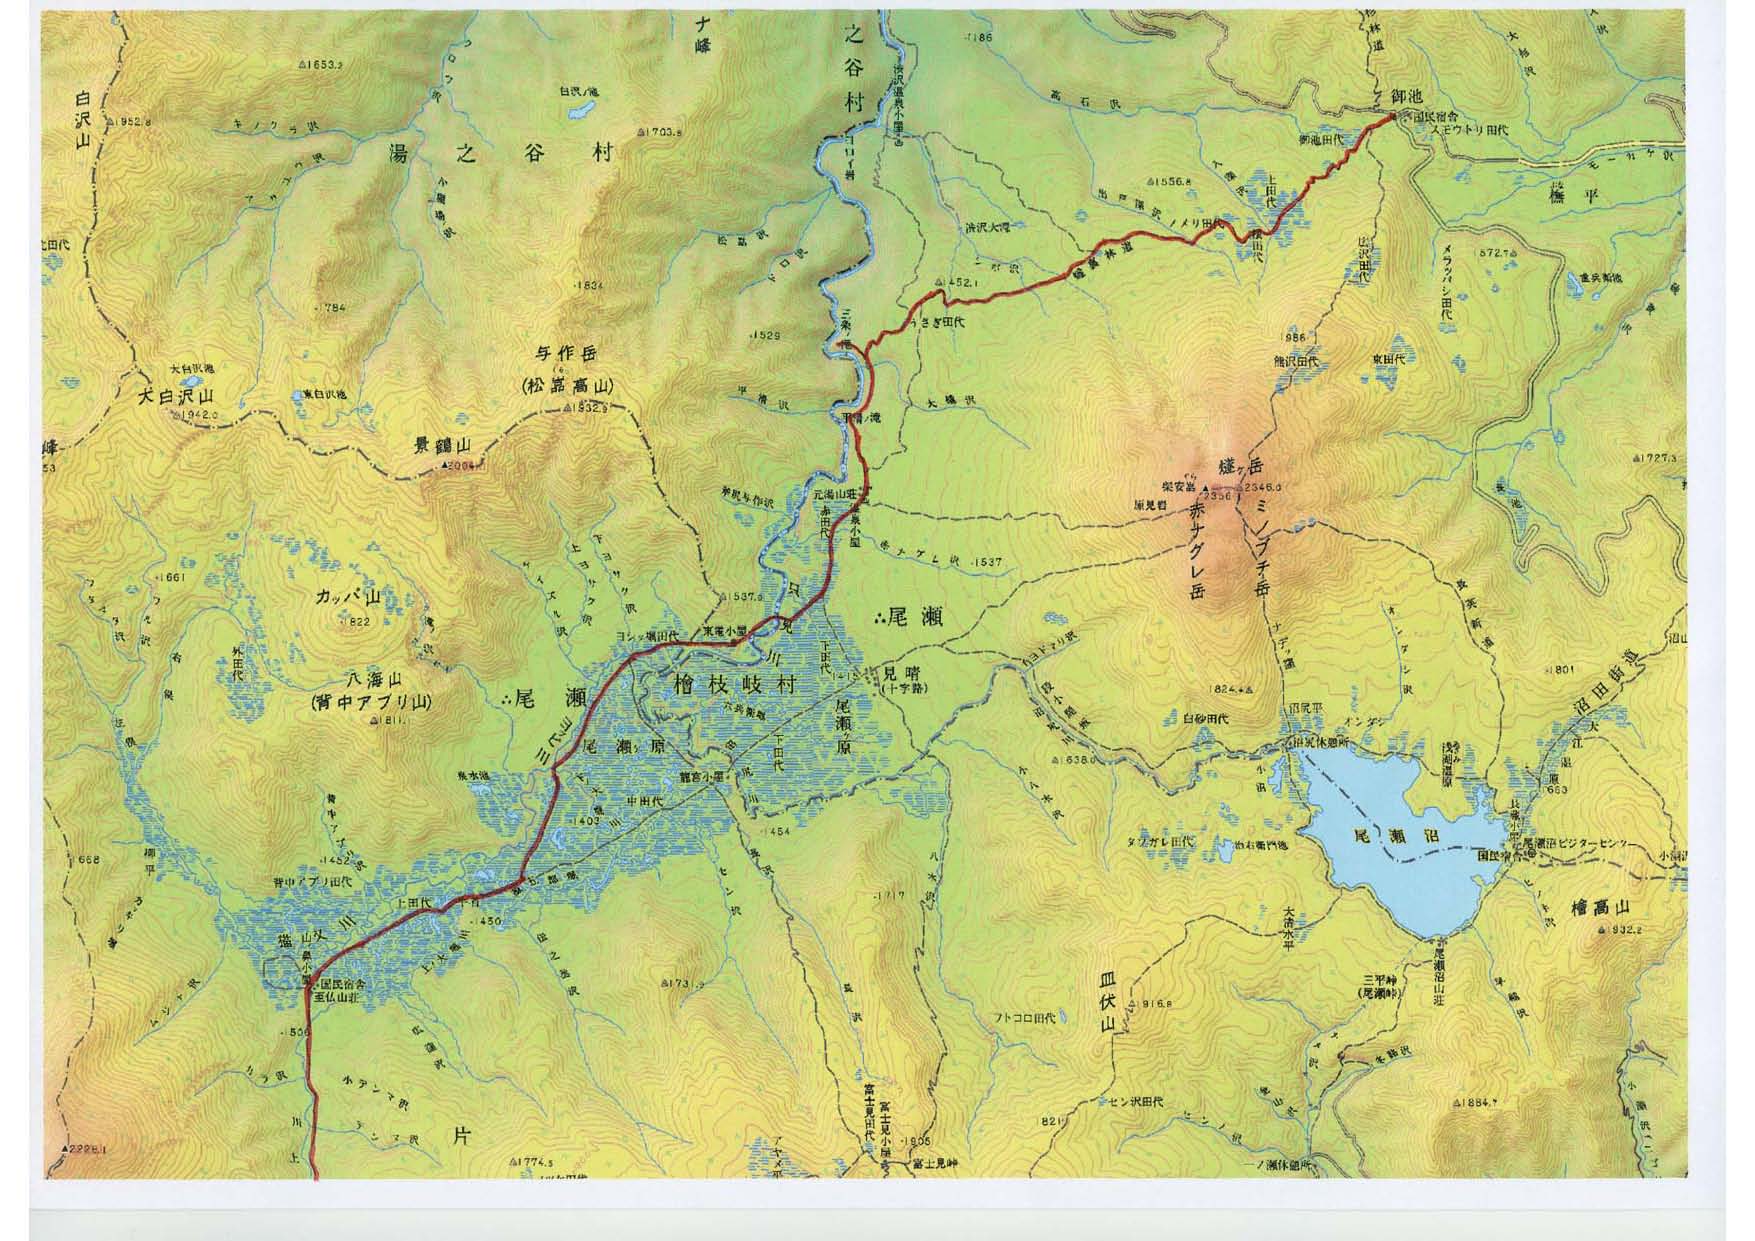 御池ー三条の滝ー鳩待峠トレースmap、クリックで拡大します。